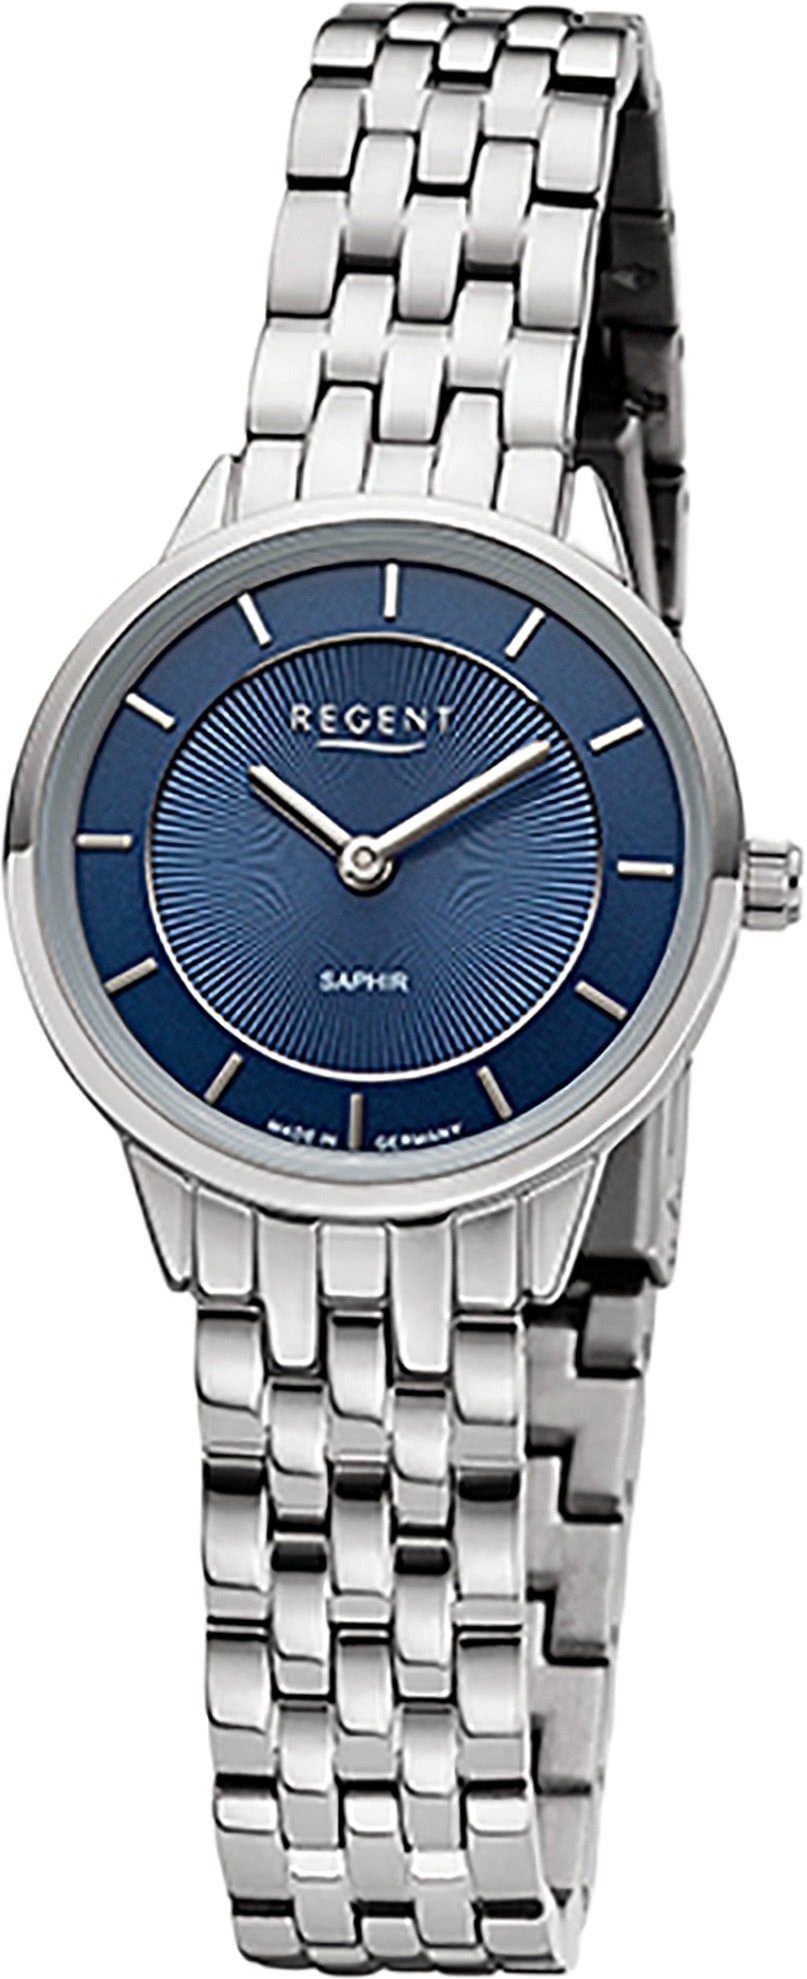 Regent klein Damen Regent (ca. rund, Quarzuhr Metallbandarmband Armbanduhr Damen 27mm), Analoganzeige, Armbanduhr